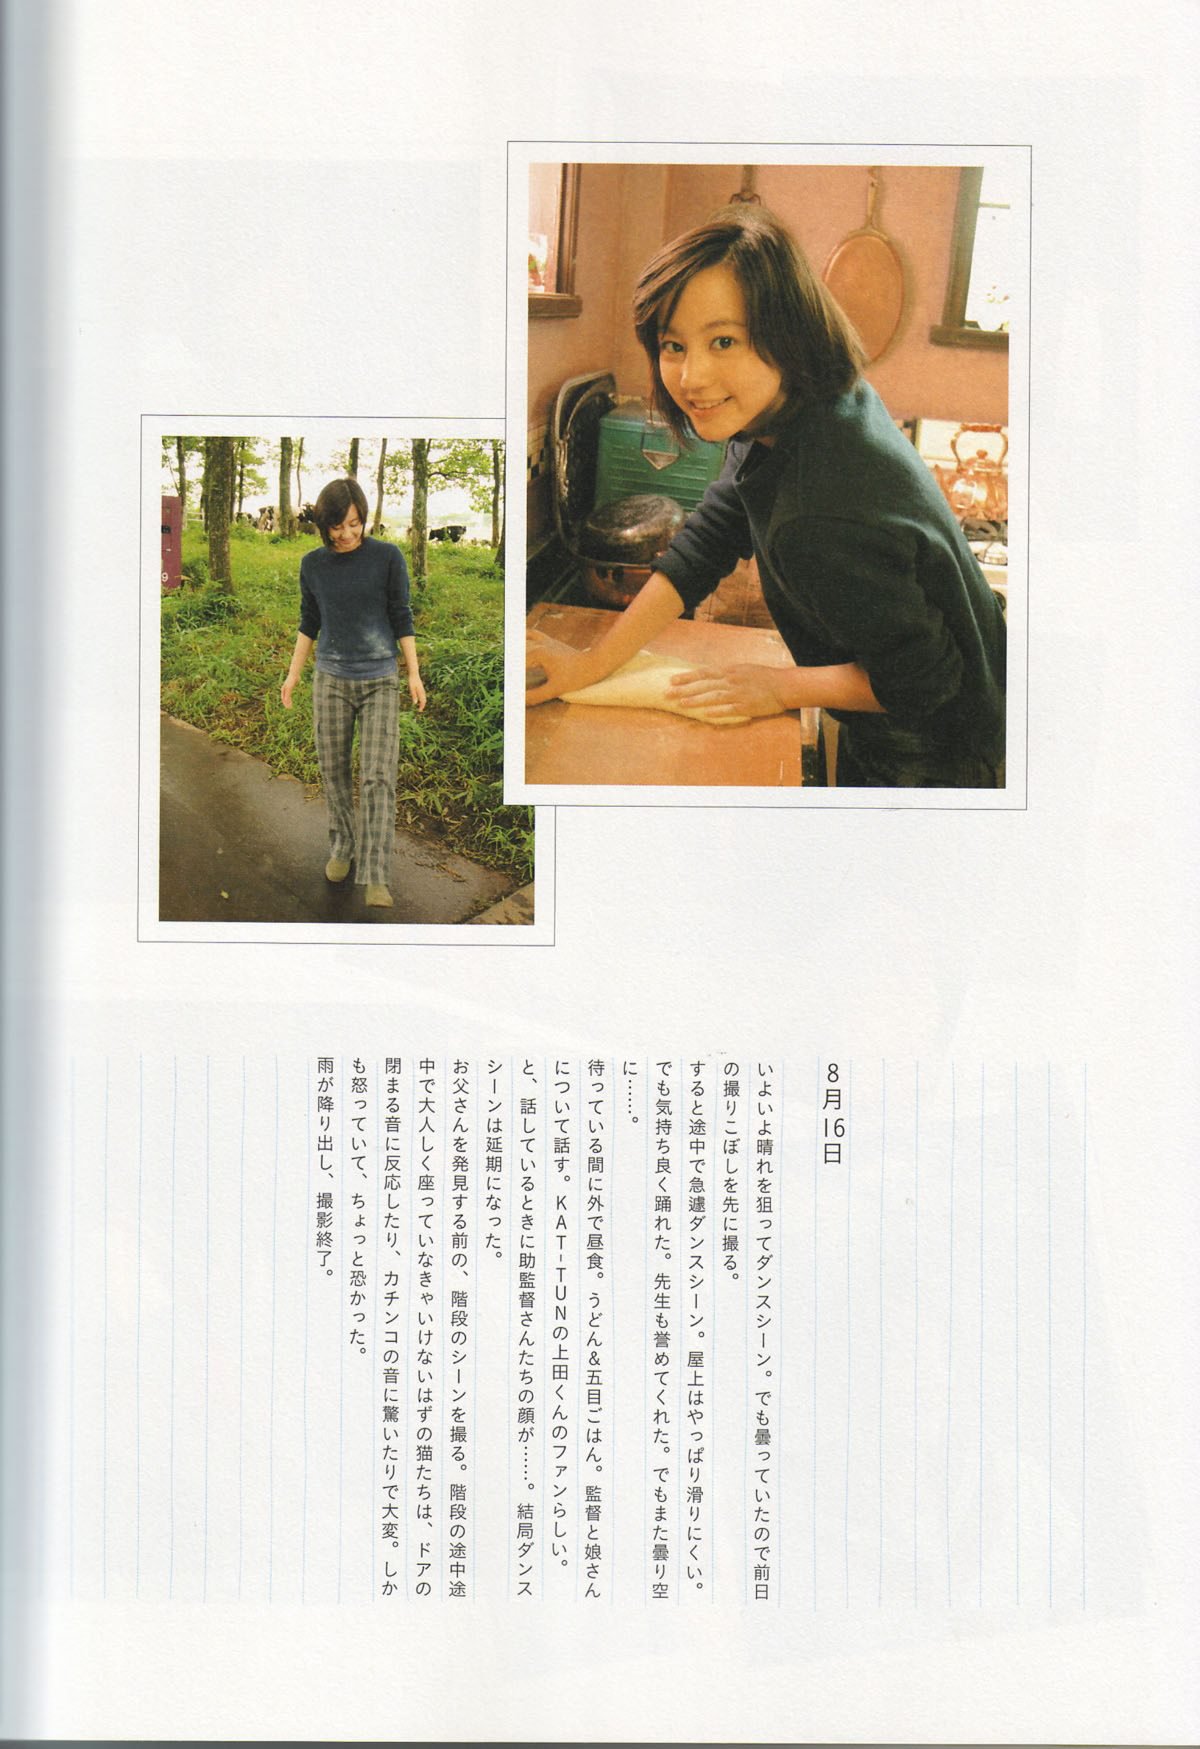 Photobook Maki Horikita 堀北真希 Cinematic 2007 03 07 0010 8808653844.jpg